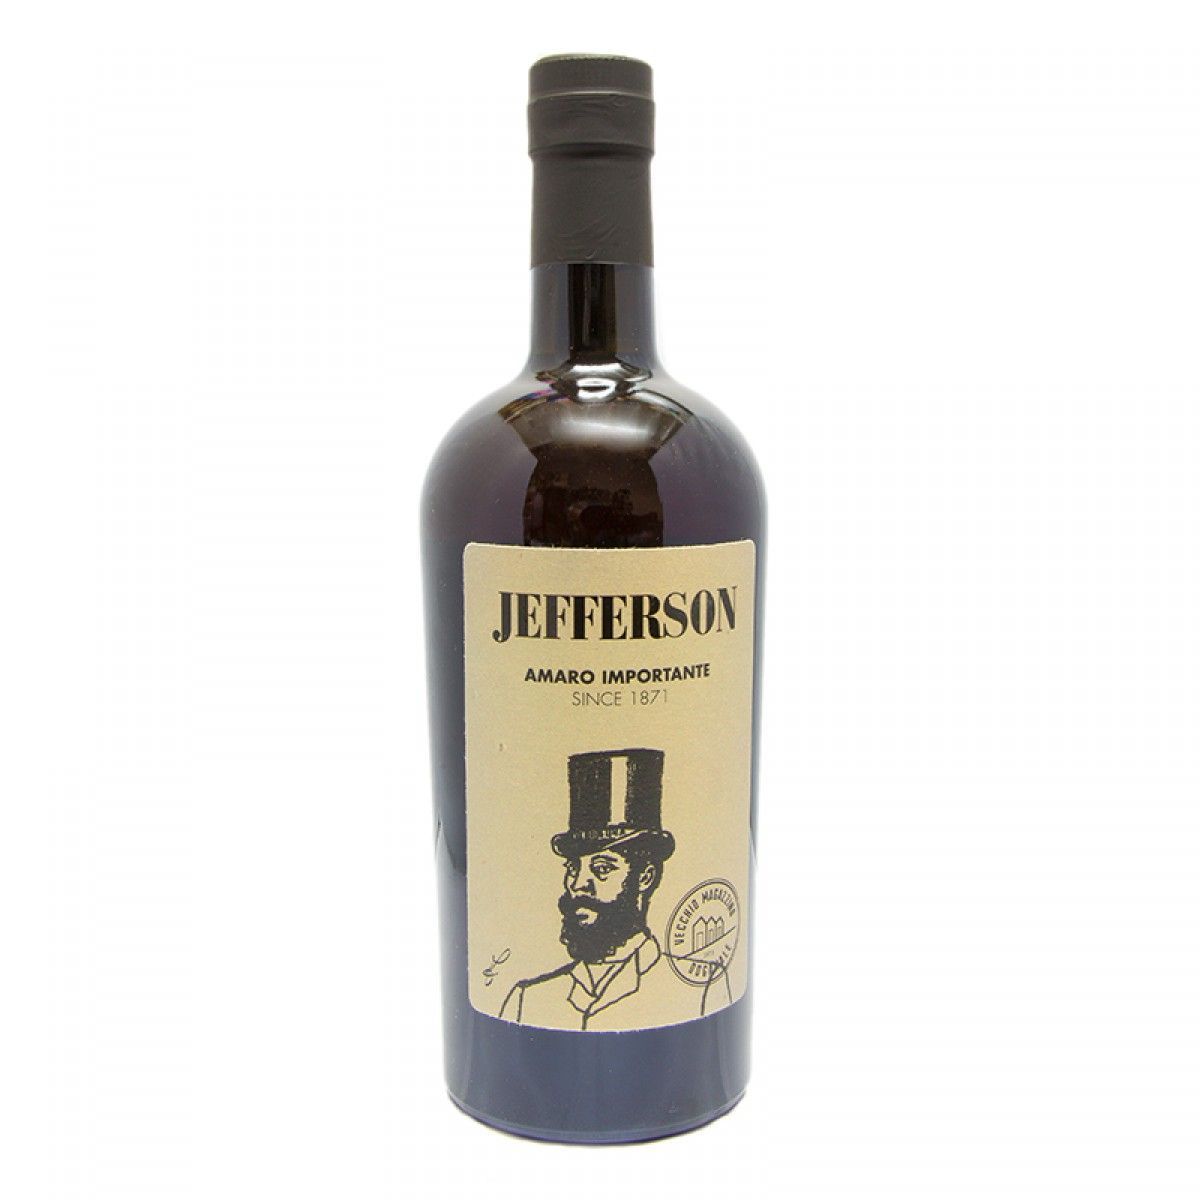 Jefferson Amaro Important Liqueur - Buy on